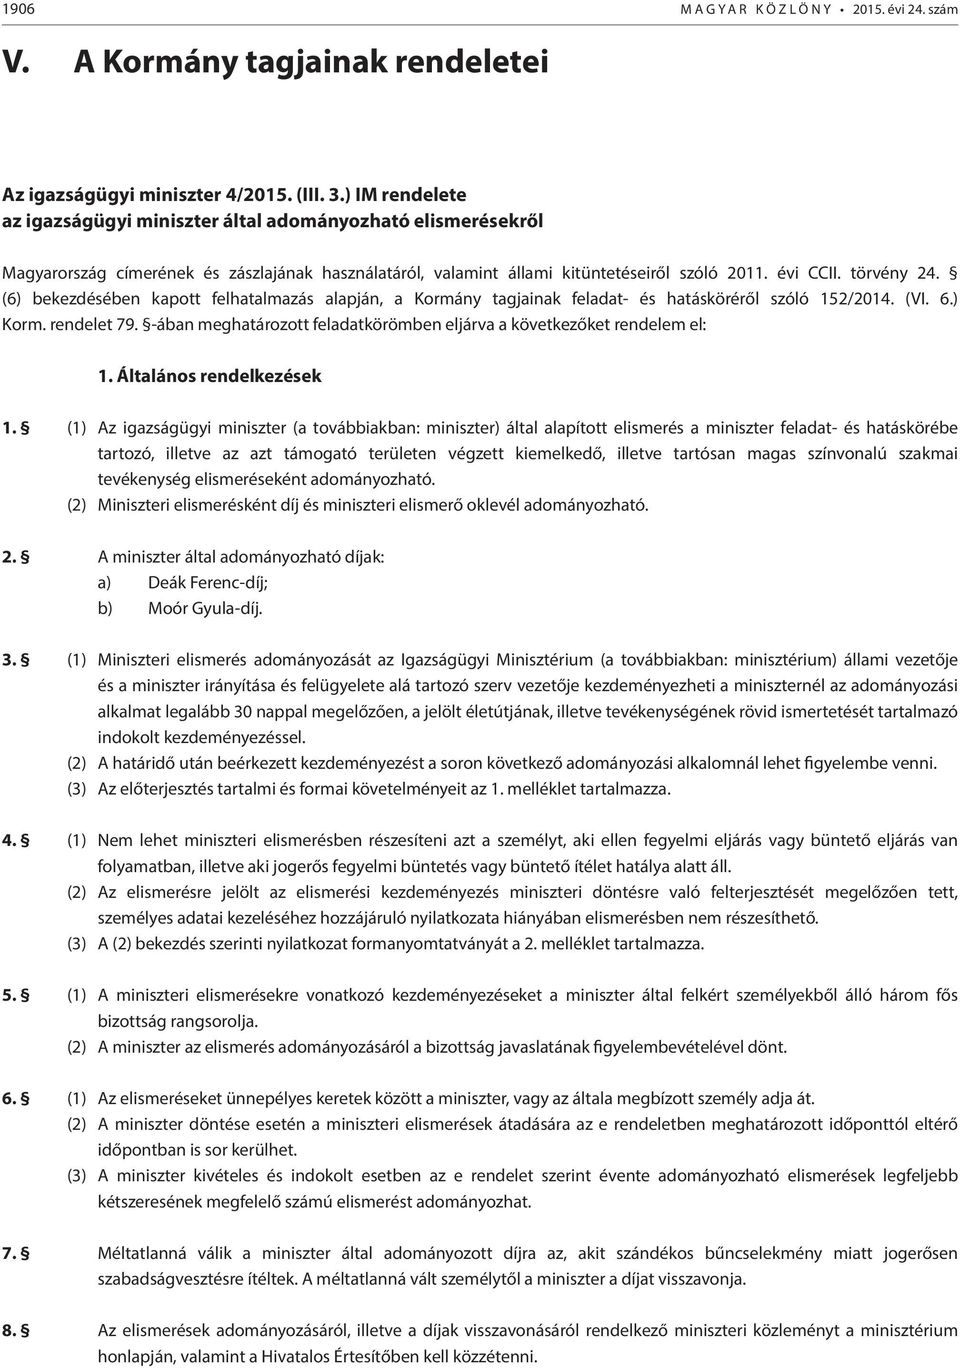 (6) bekezdésében kapott felhatalmazás alapján, a Kormány tagjainak feladat- és hatásköréről szóló 152/2014. (VI. 6.) Korm. rendelet 79.